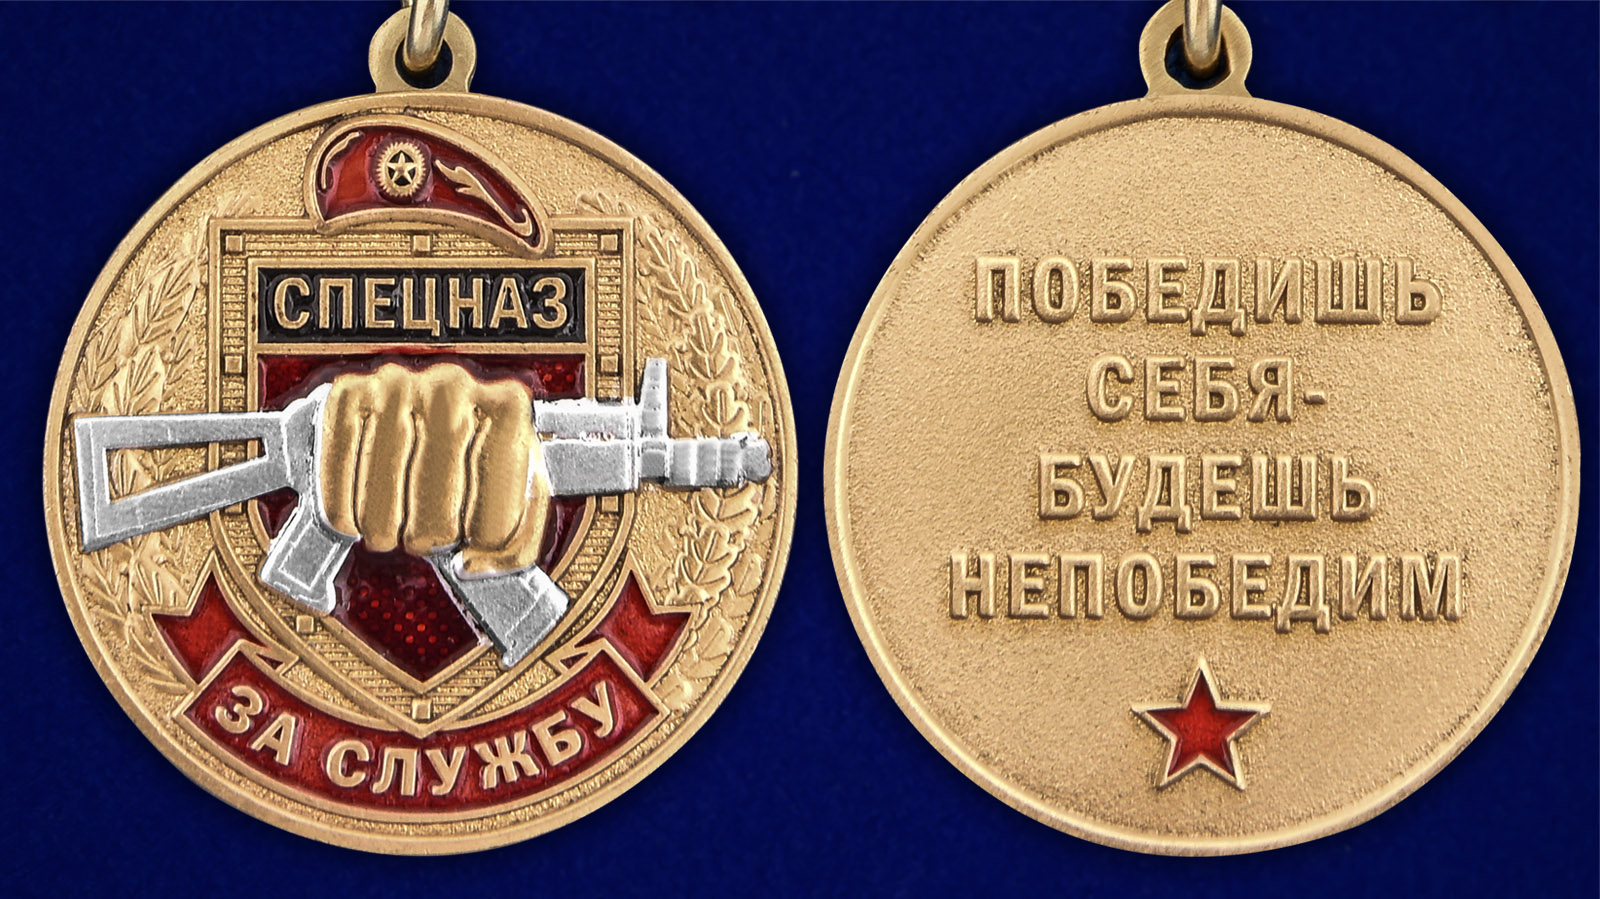 Описание медали "За службу в Спецназе Росгвардии" - аверс и реверс